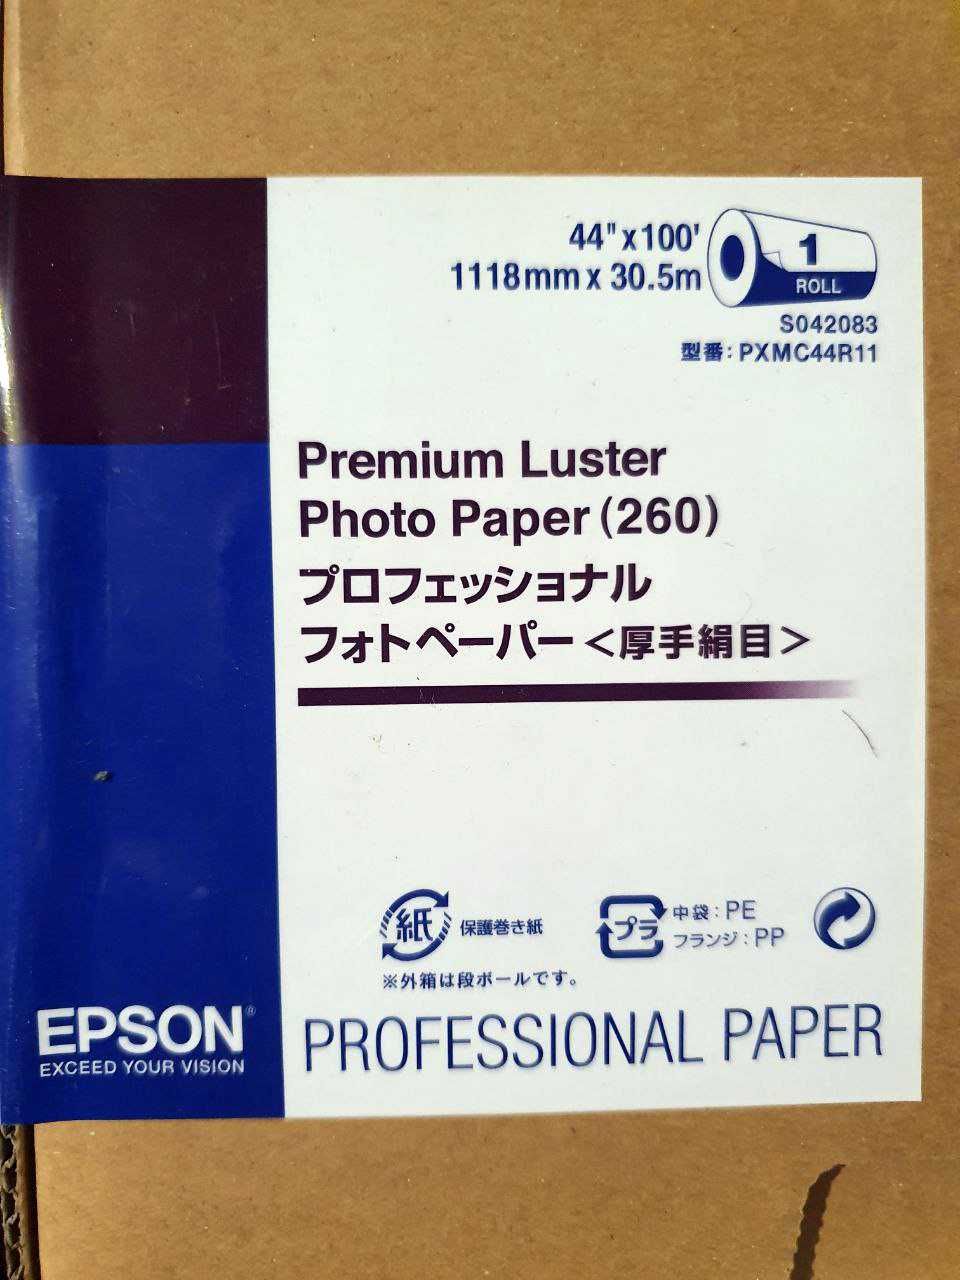 Фотопапір Epson Premium Luster Photo Paper (260) 44"x30.5m C13S042083